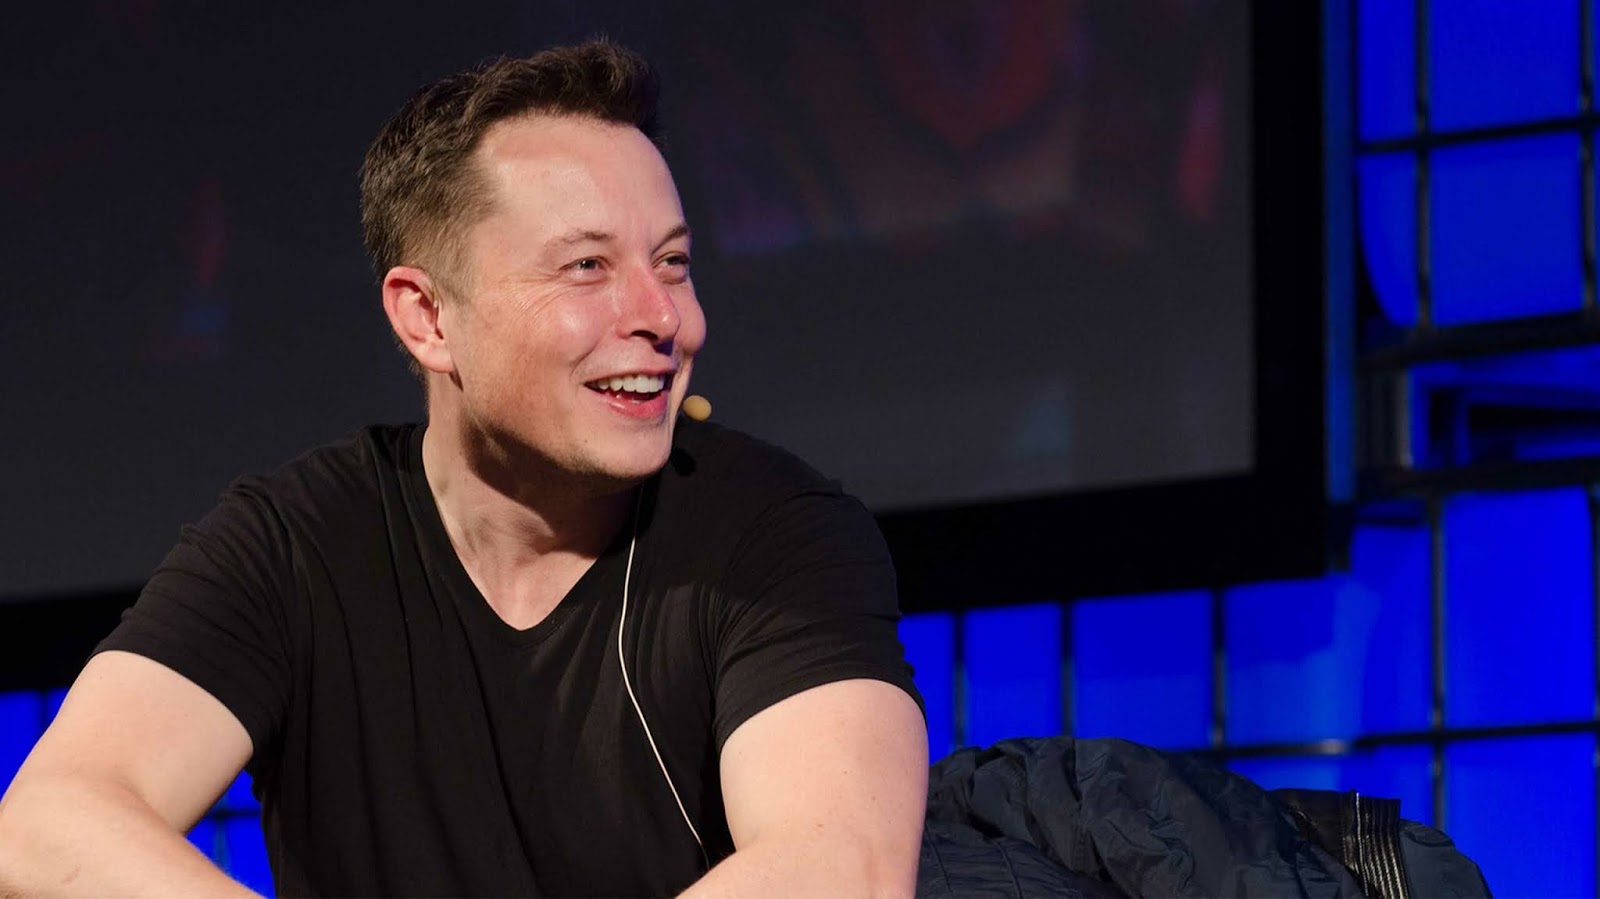 Elon Musk Net Worth in 2020?